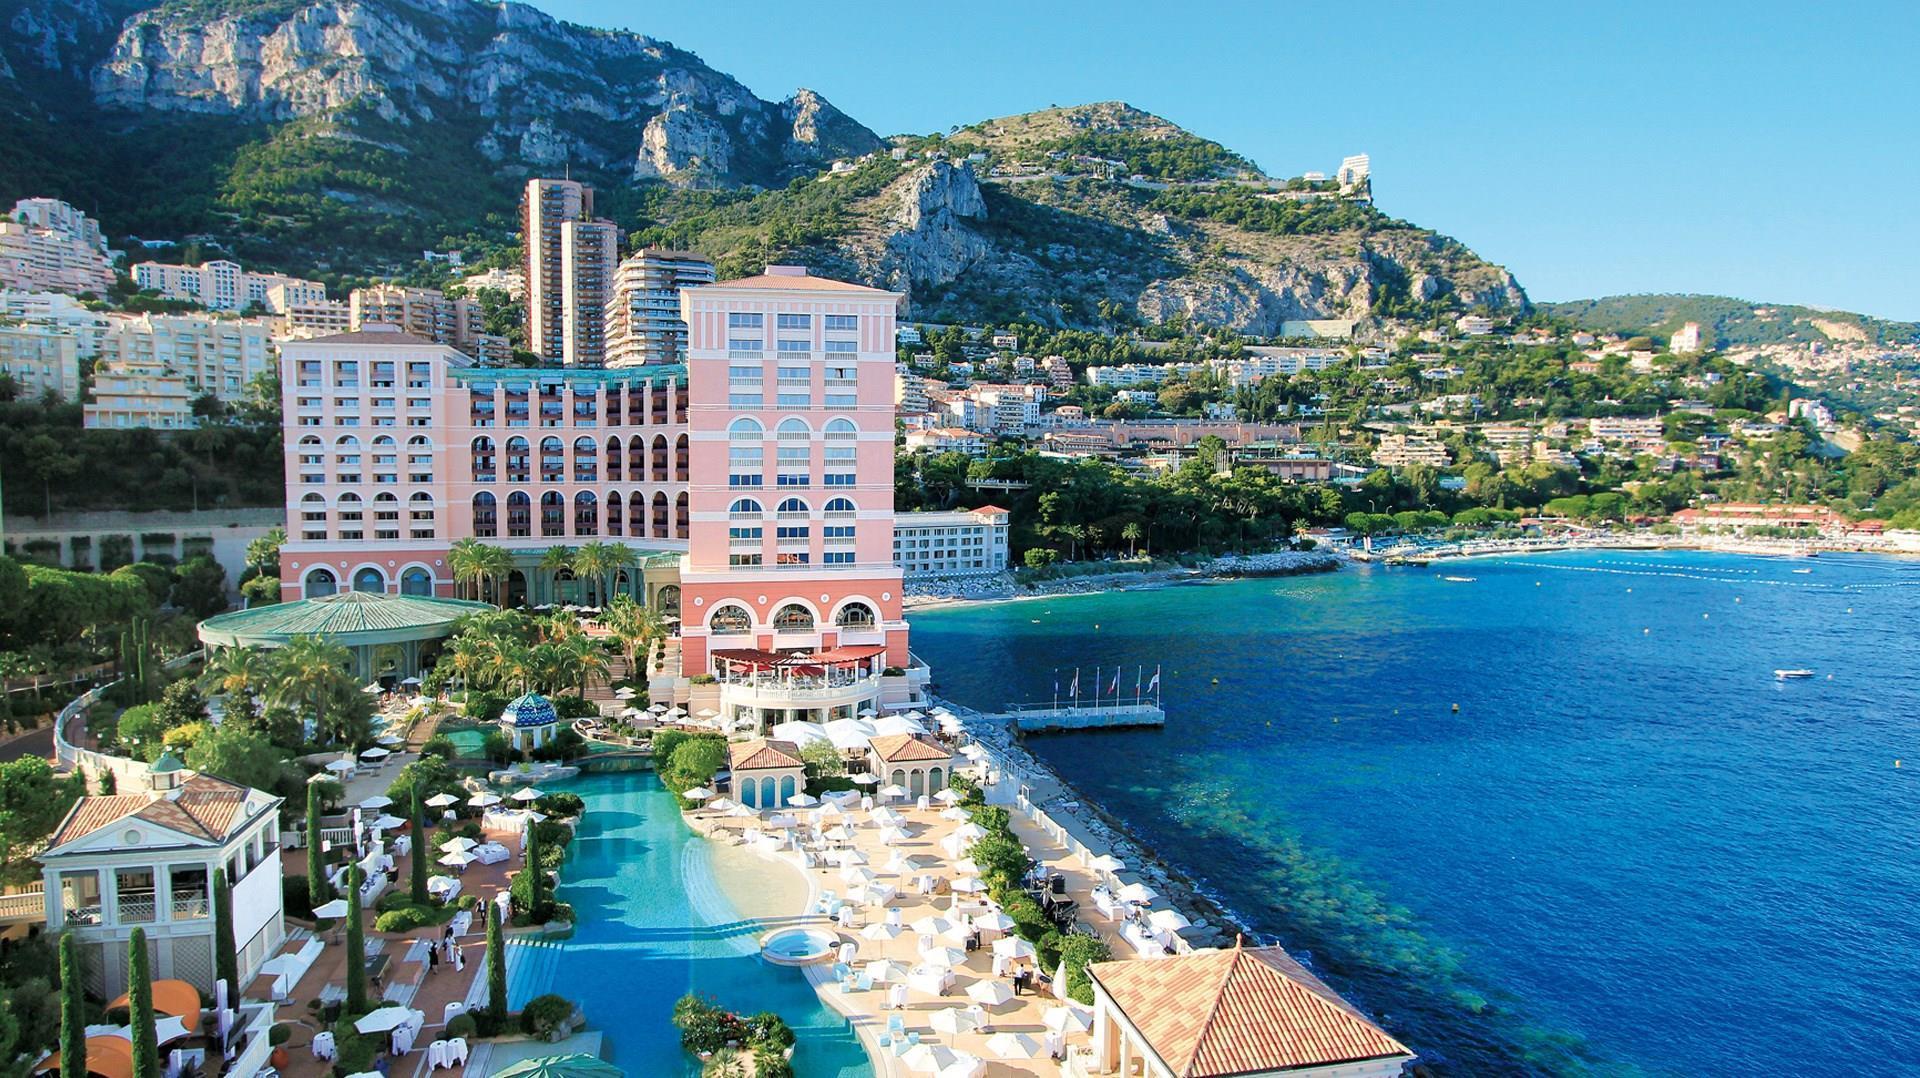 Monte-Carlo Bay Hotel & Resort in Monte Carlo, MC